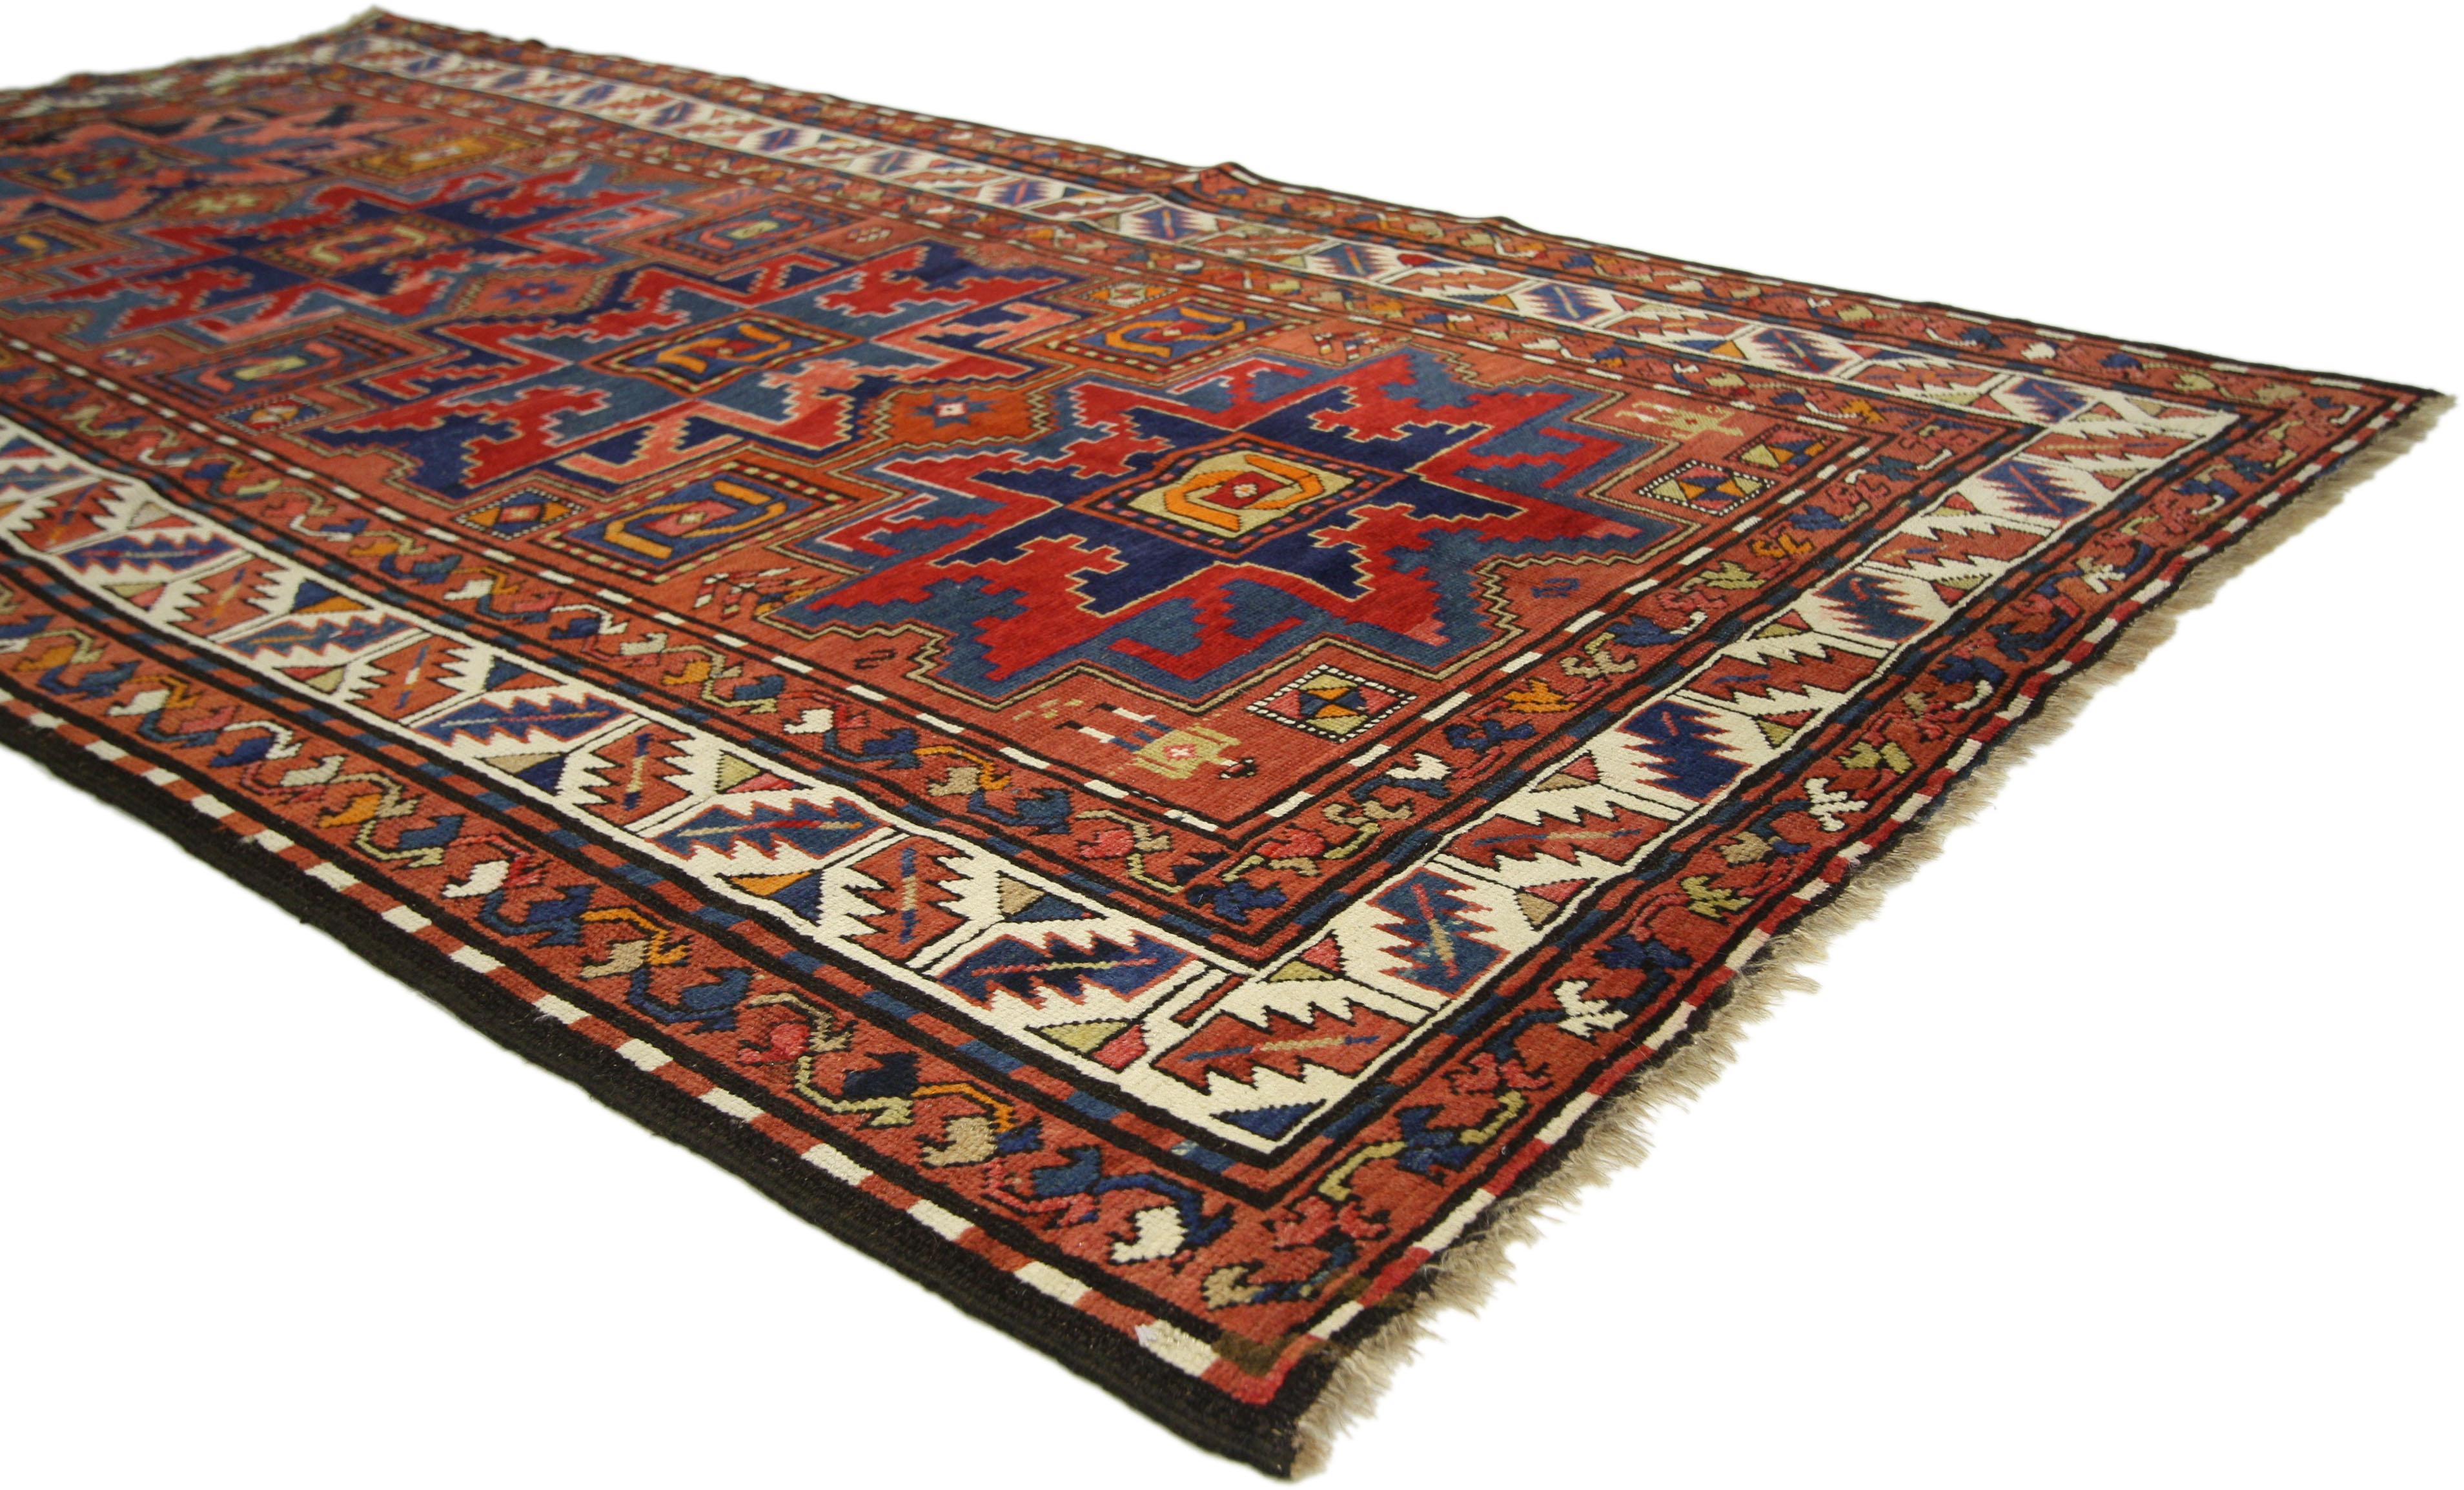 73306 Antiker kaukasischer Kazak-Teppich, 04'04 X 08'07.
Dieser antike russische Kazak-Teppich aus handgeknüpfter Wolle basiert auf traditionellen Mustern aus der Kaukasusregion und zeigt vier Lesghi-Sterne, die von klassischen kaukasischen Motiven